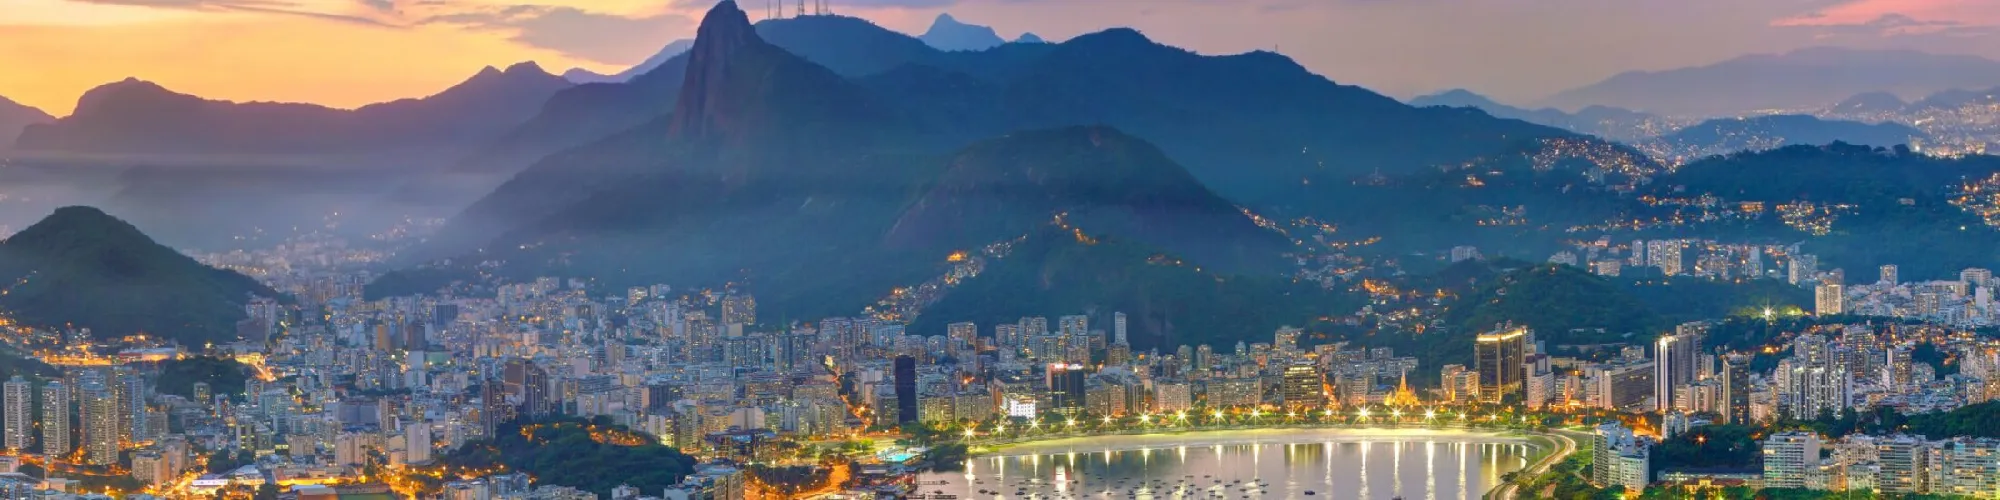 Hotels in Brasilien background image